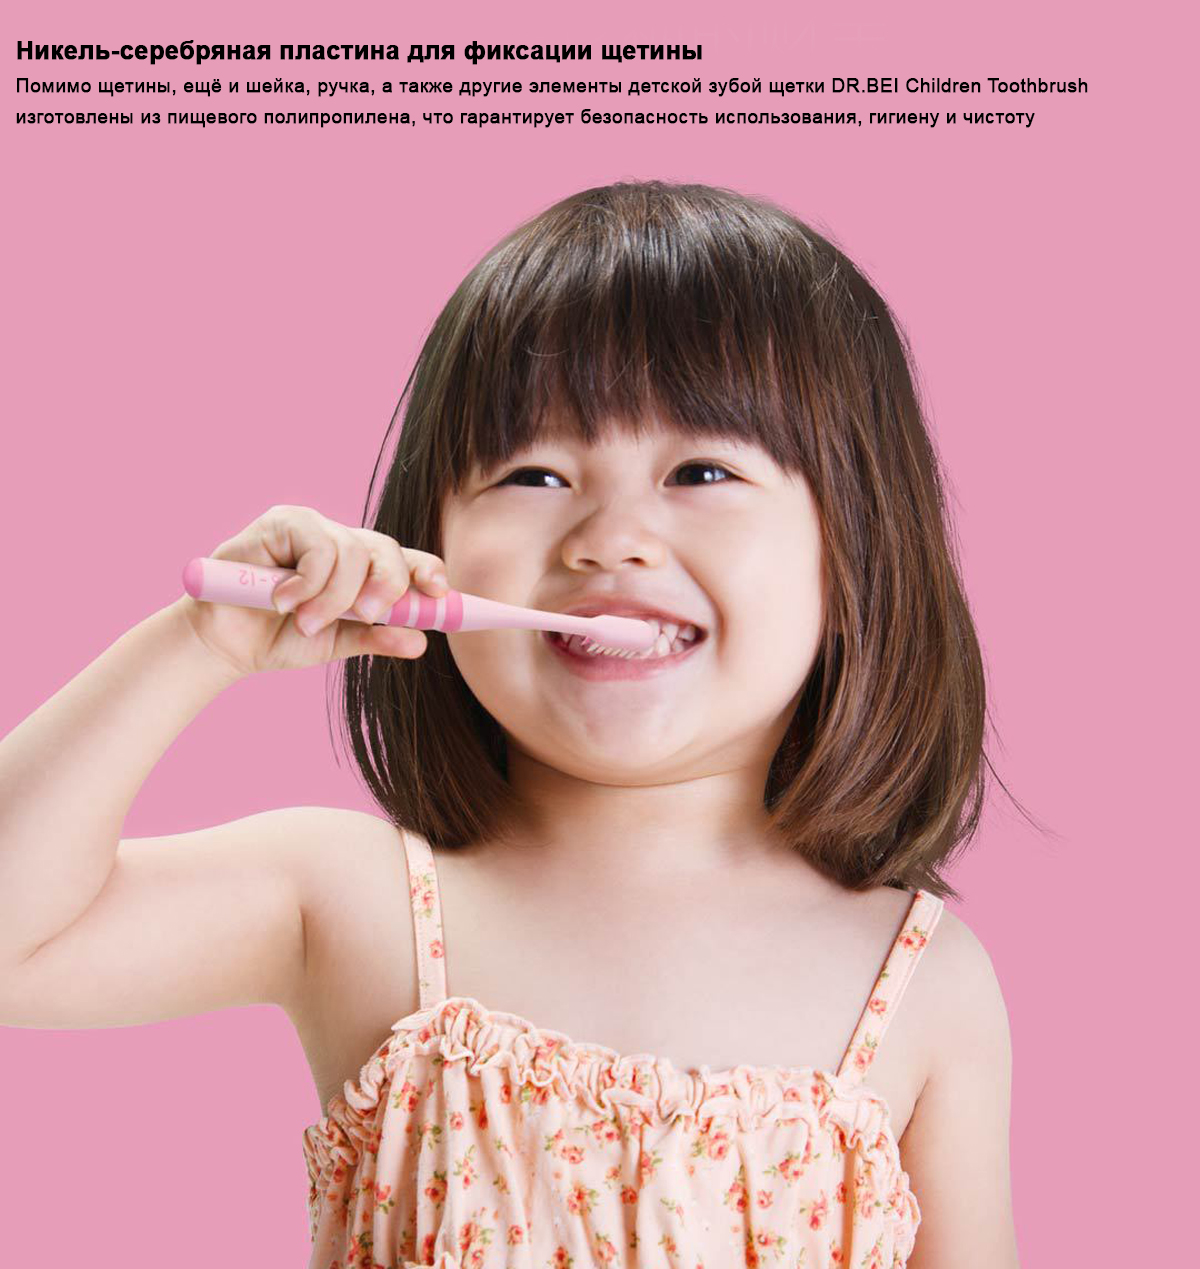 Зубная щетка DR.BEI Children Toothbrush